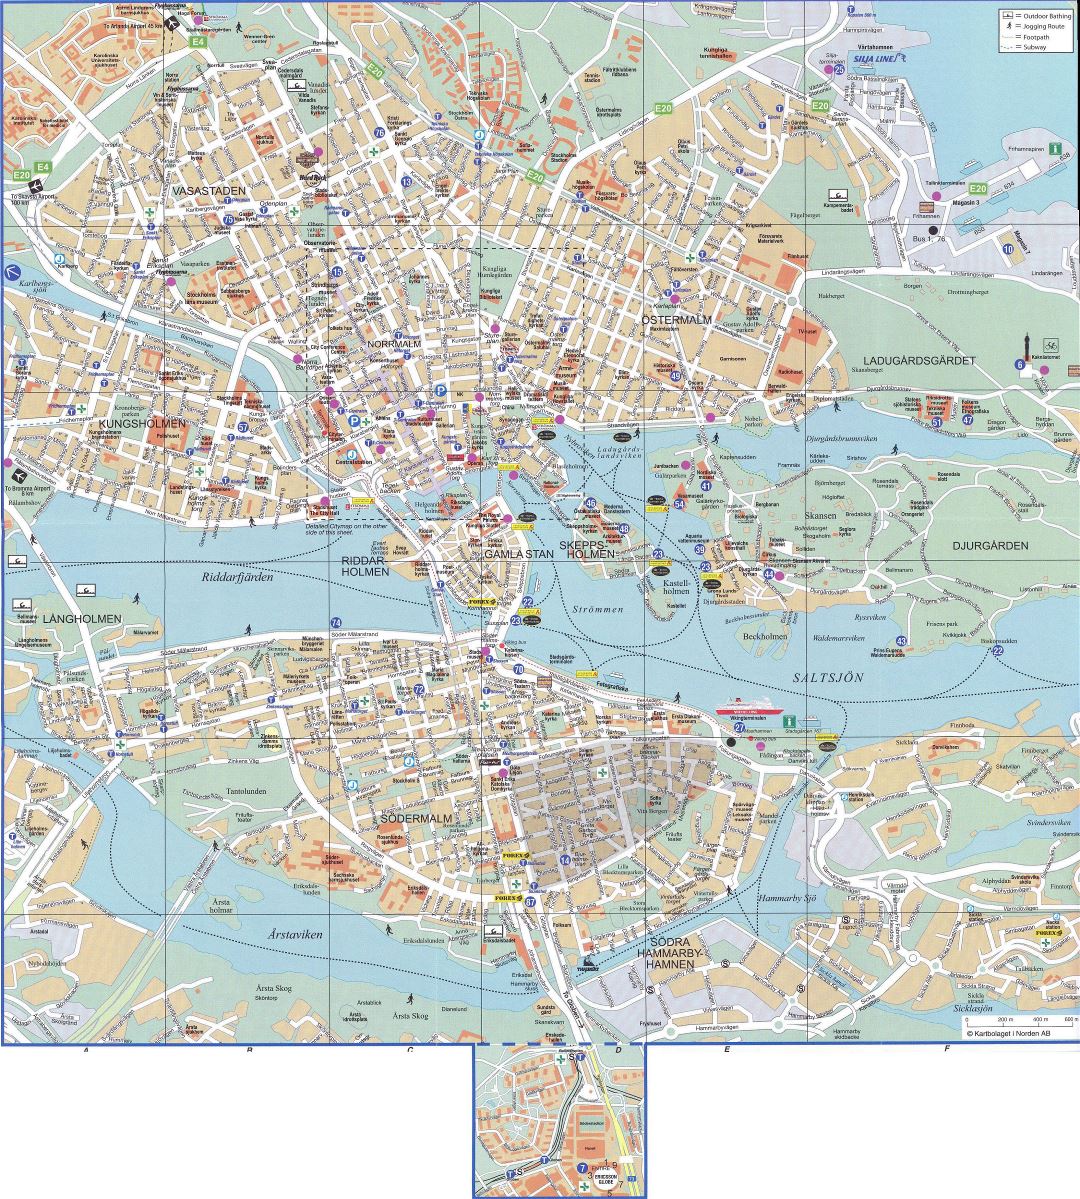 Grande detallado mapa general de ciudad de Estocolmo